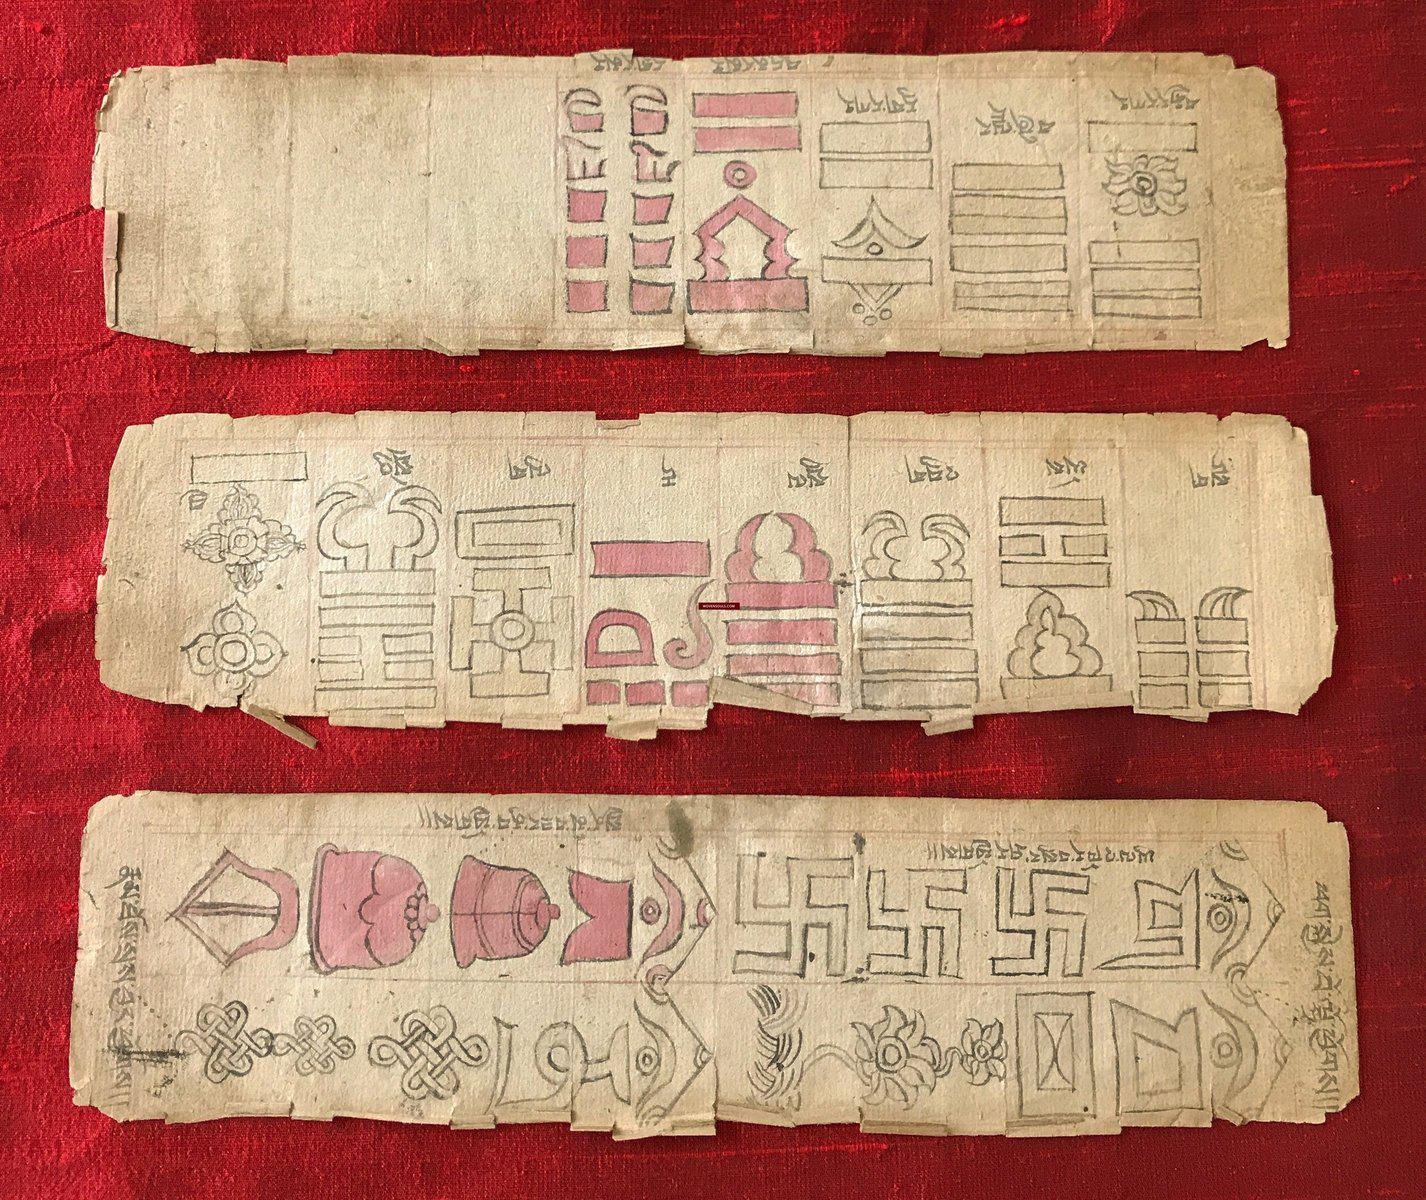 1115 Antique Tibetan Manuscript on Buddhist Architectural Design of Chorten Stupas-WOVENSOULS-Antique-Vintage-Textiles-Art-Decor